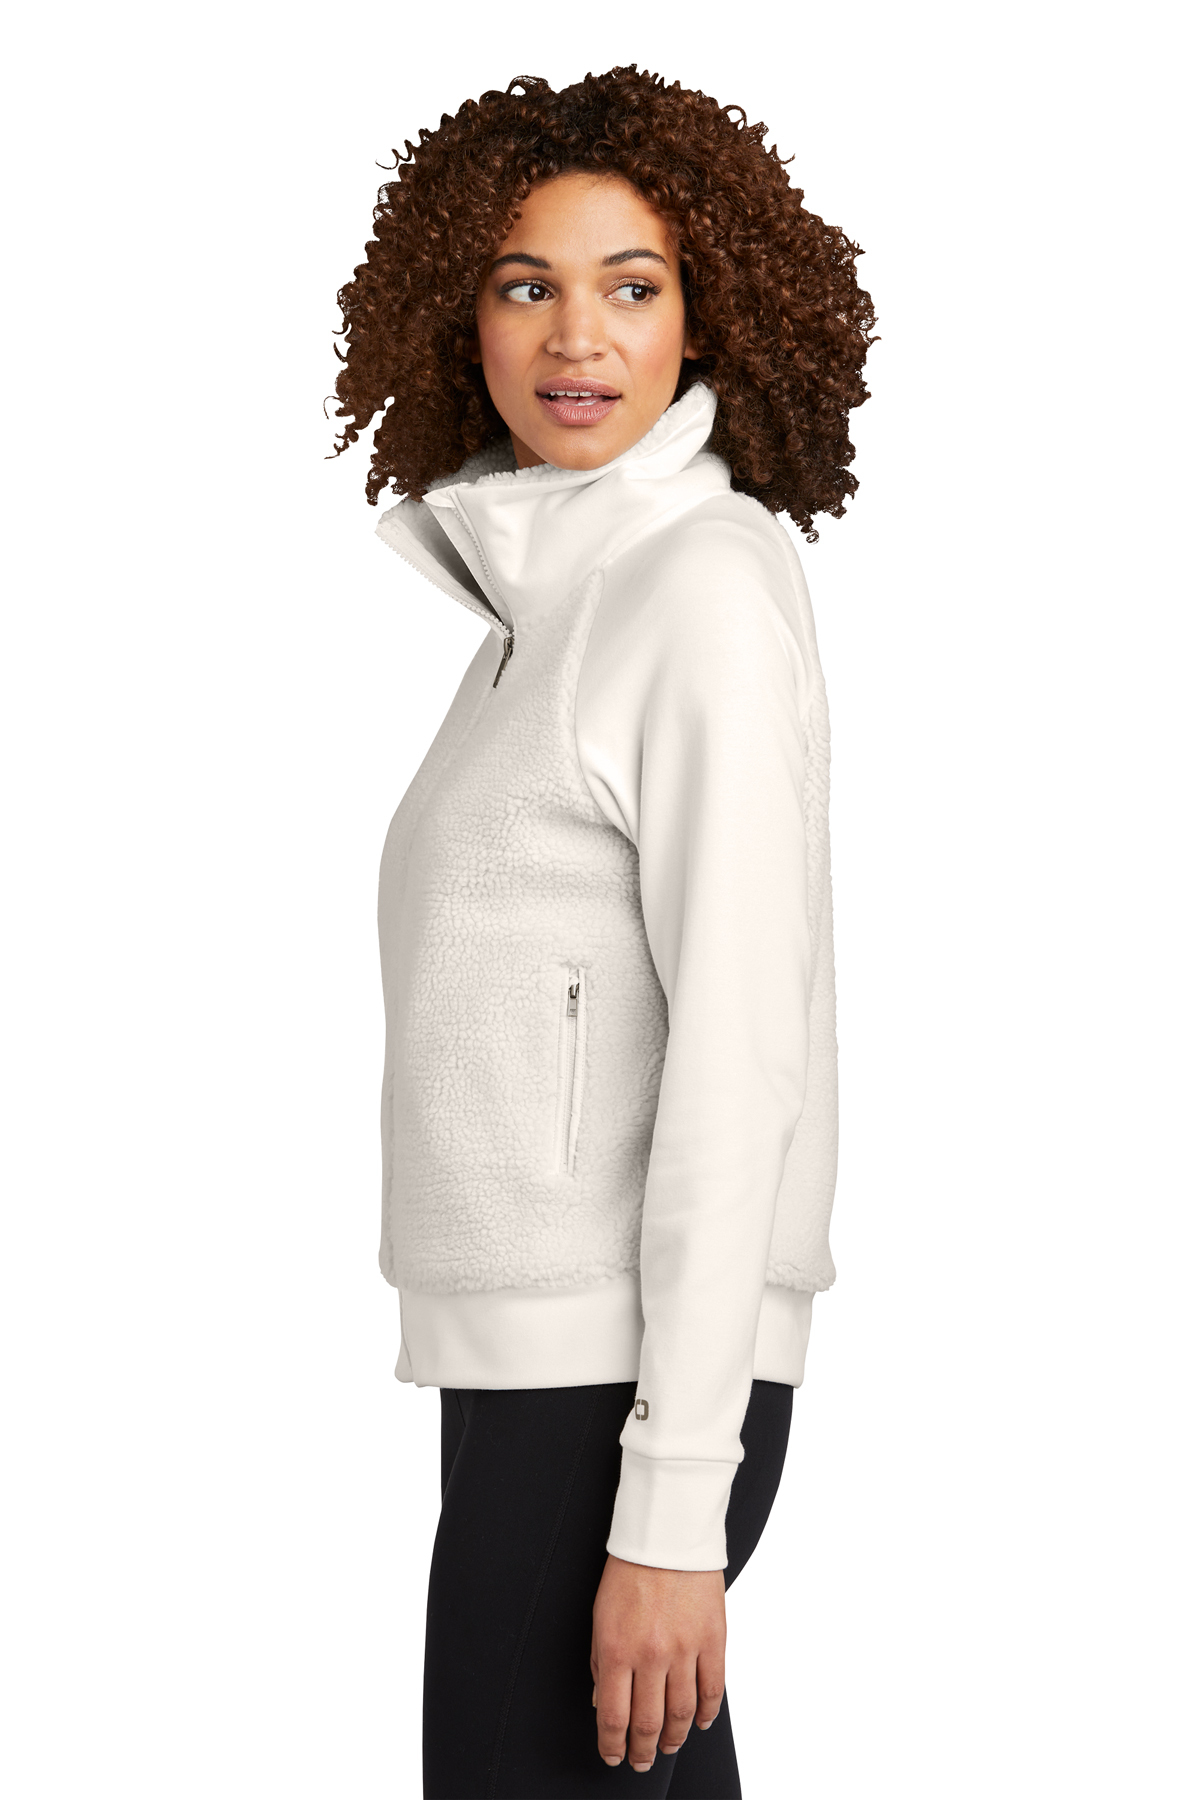 Lululemon Sweatshirt 6 Black Sherpa Fleece 1/4 Zip Pockets Pullover Womens